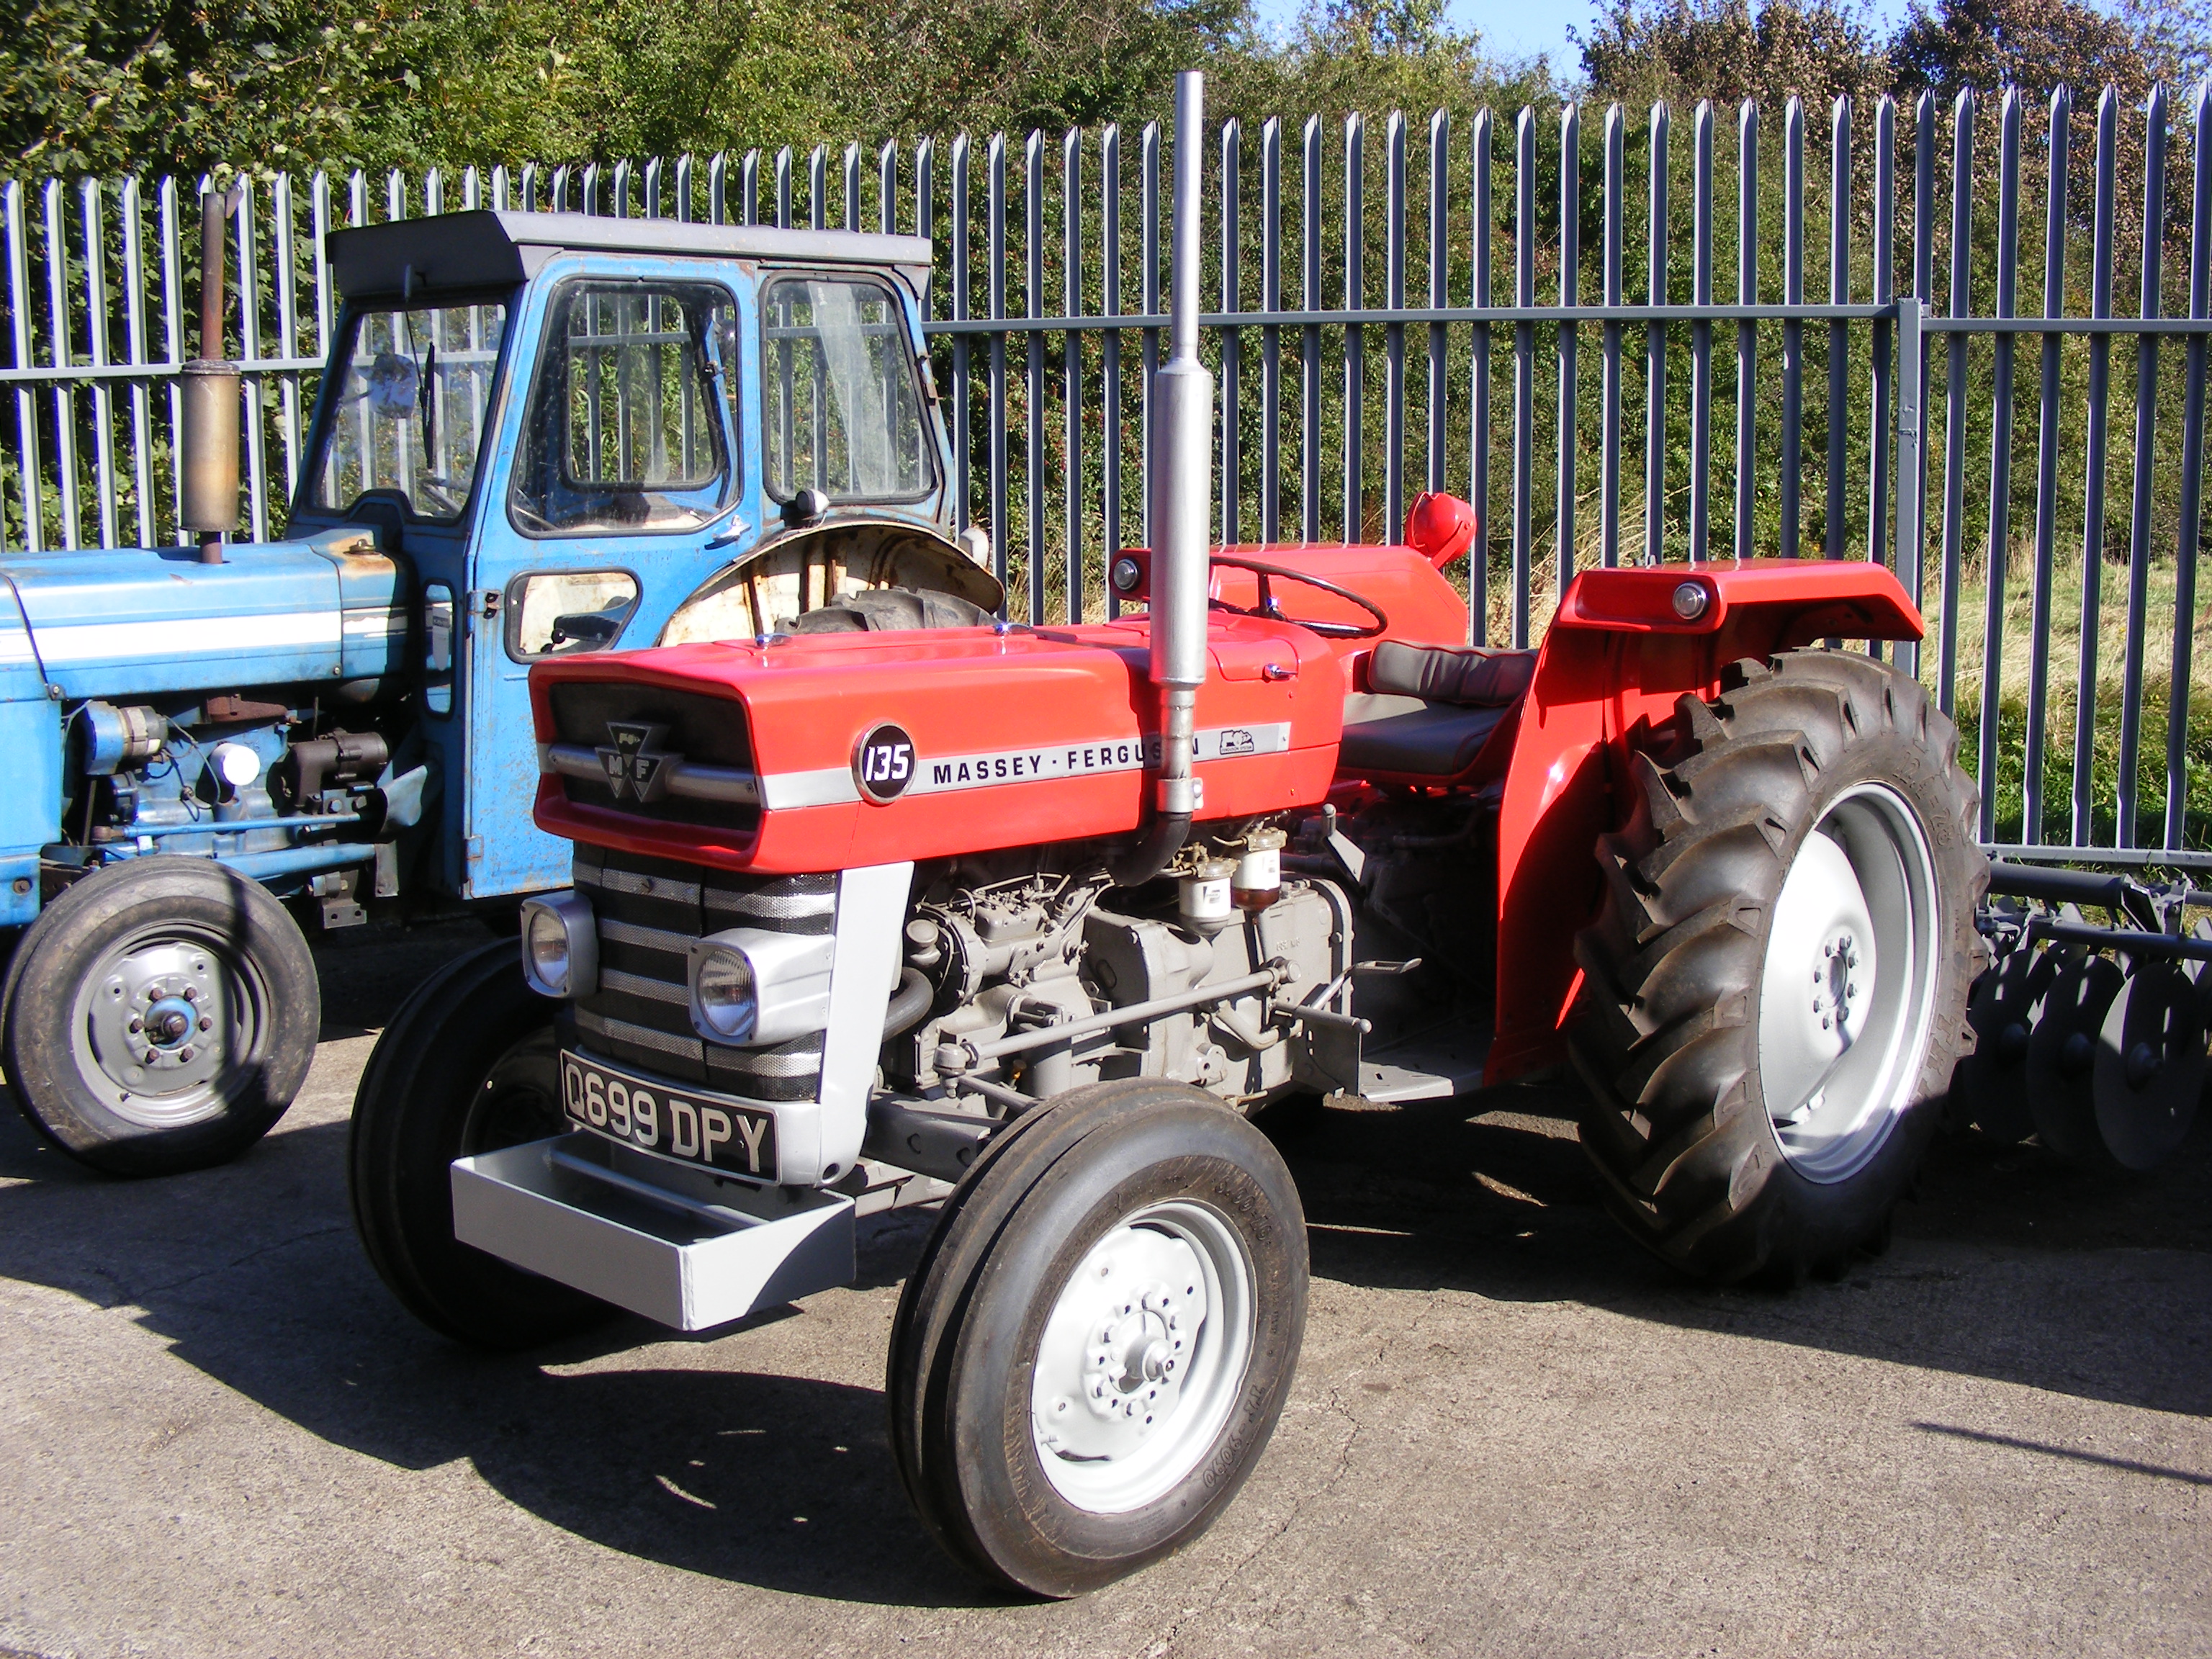 Tracteur: Massey Ferguson 135 Q699DPY Publicités vintage Bowman...